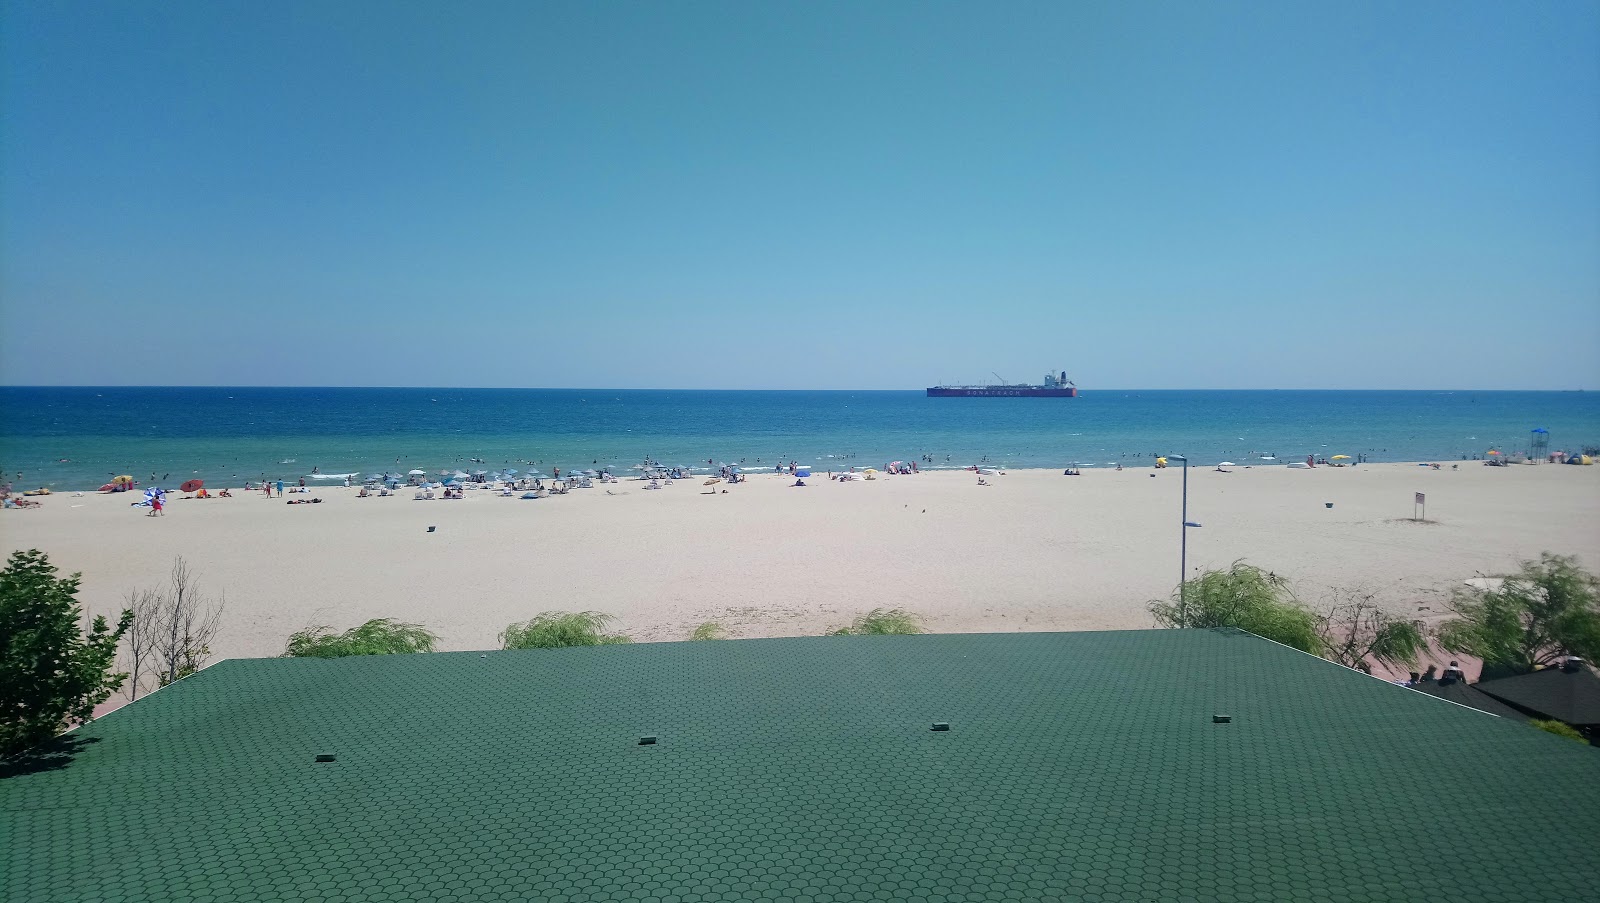 Zdjęcie Sultankoy beach - popularne miejsce wśród znawców relaksu